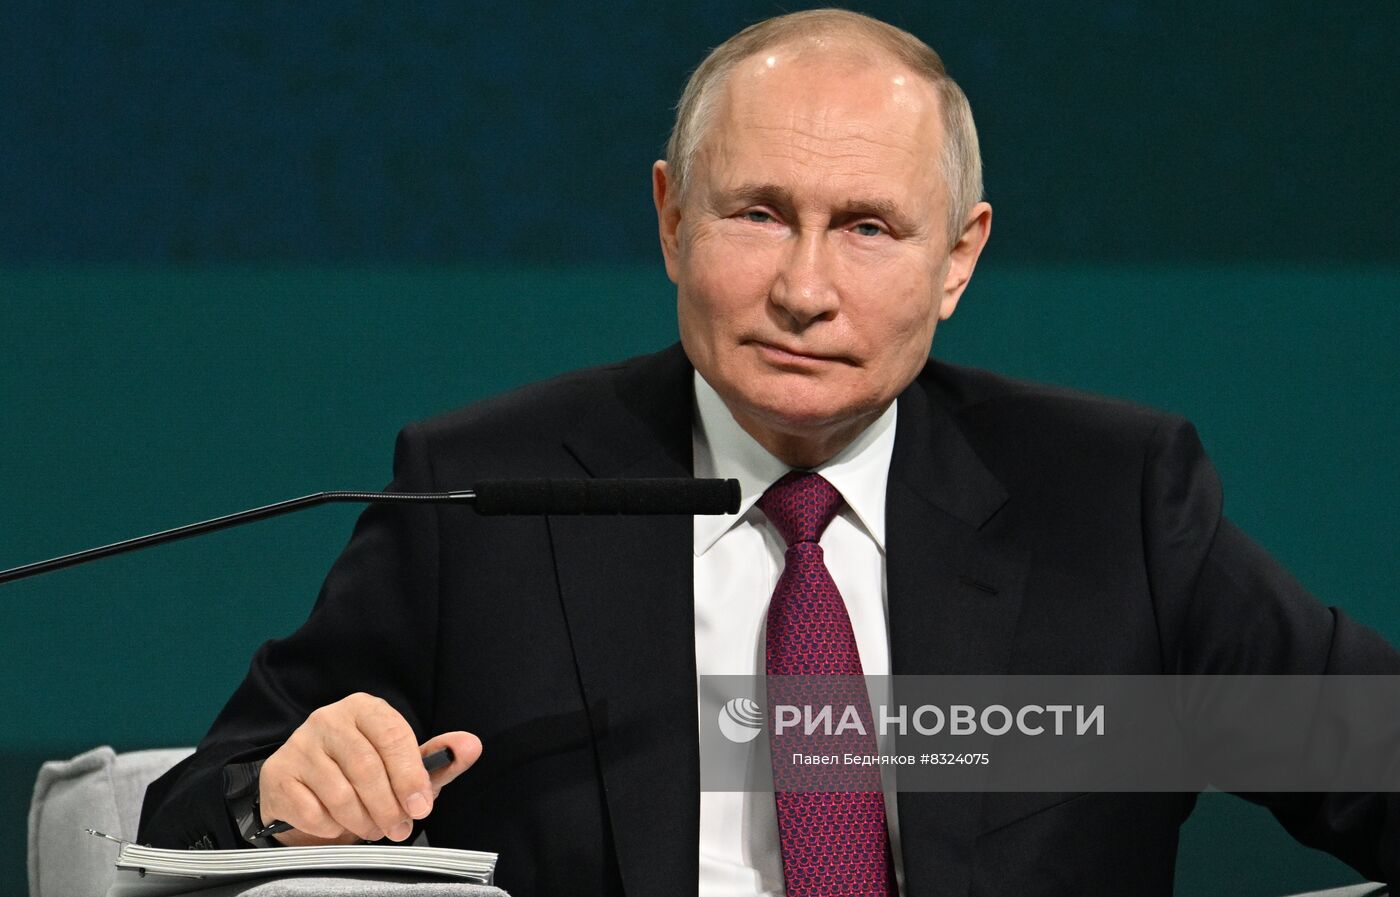 Президент РФ В. Путин принял участие в международной конференции "Путешествие в мир искусственного интеллекта"